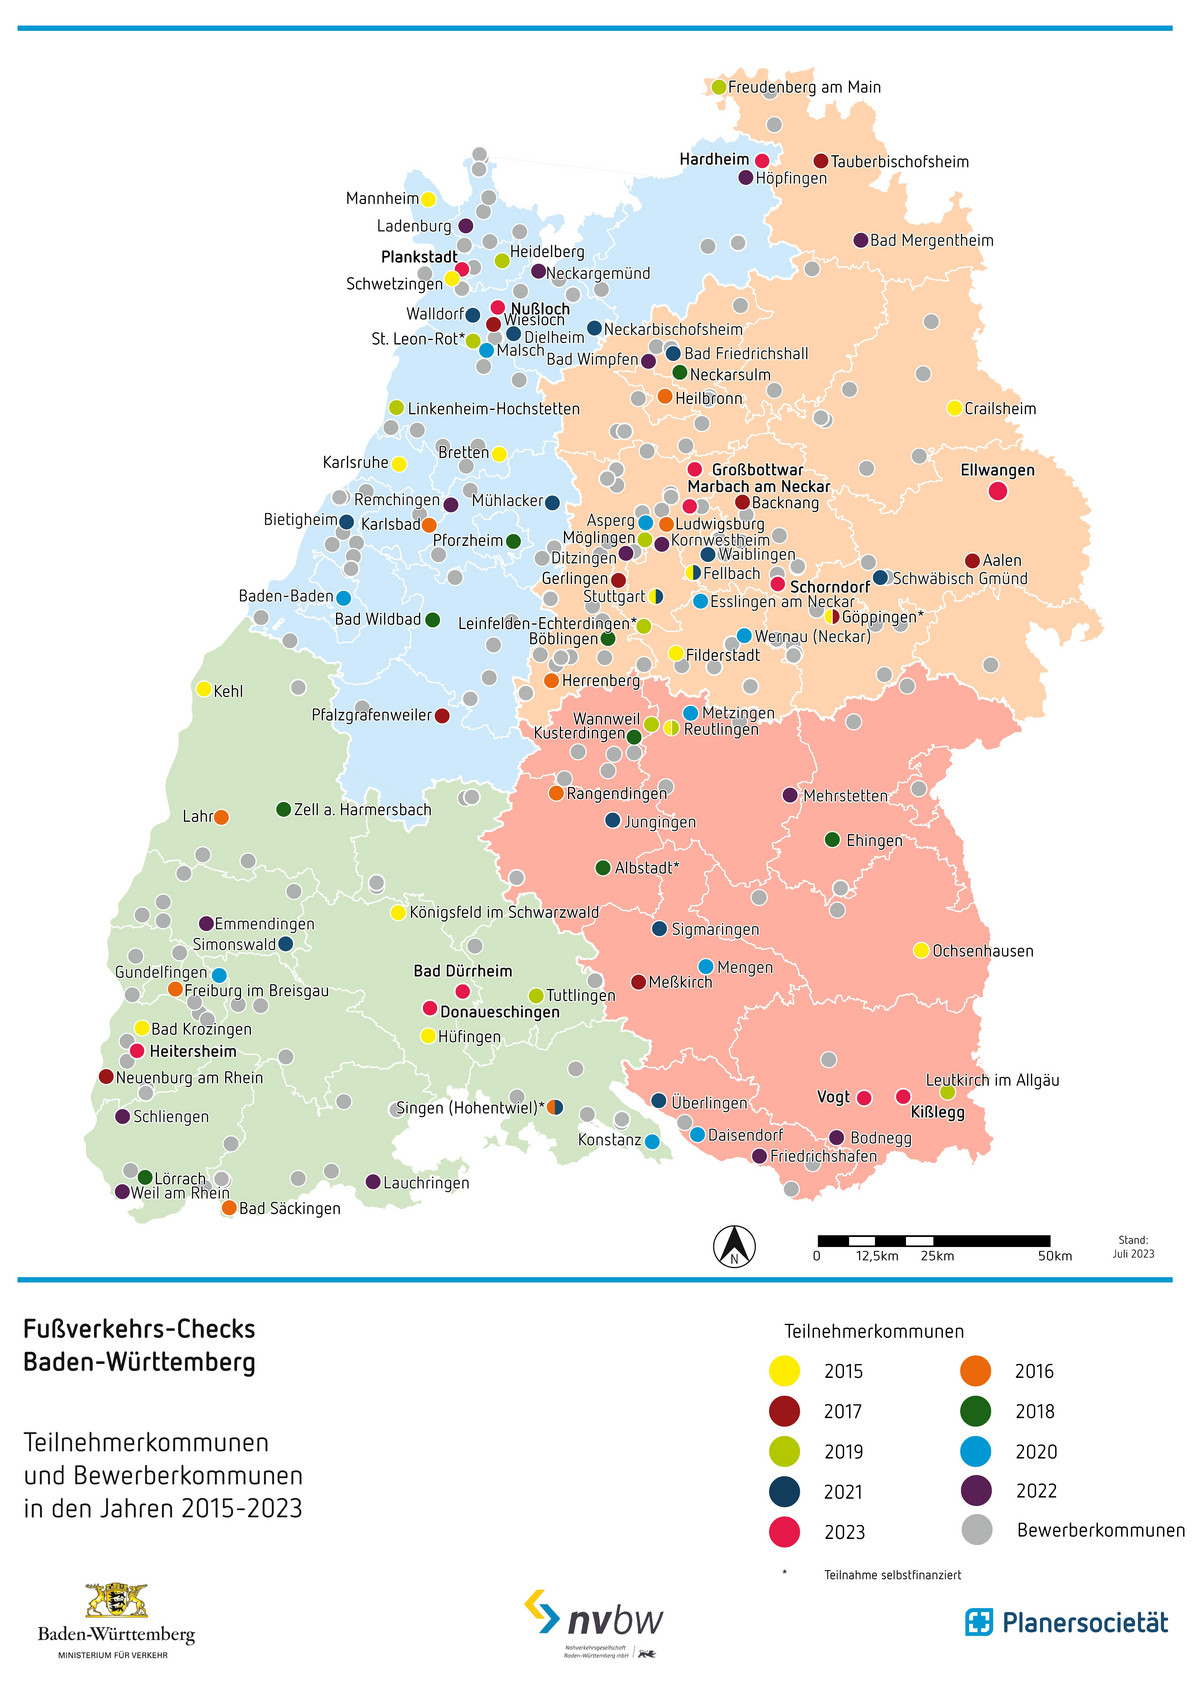 Karte mit den Teilnehmer- und Bewerberkommunen der Fußverkehrs-Checks Baden-Württemberg von 2015 bis 2023